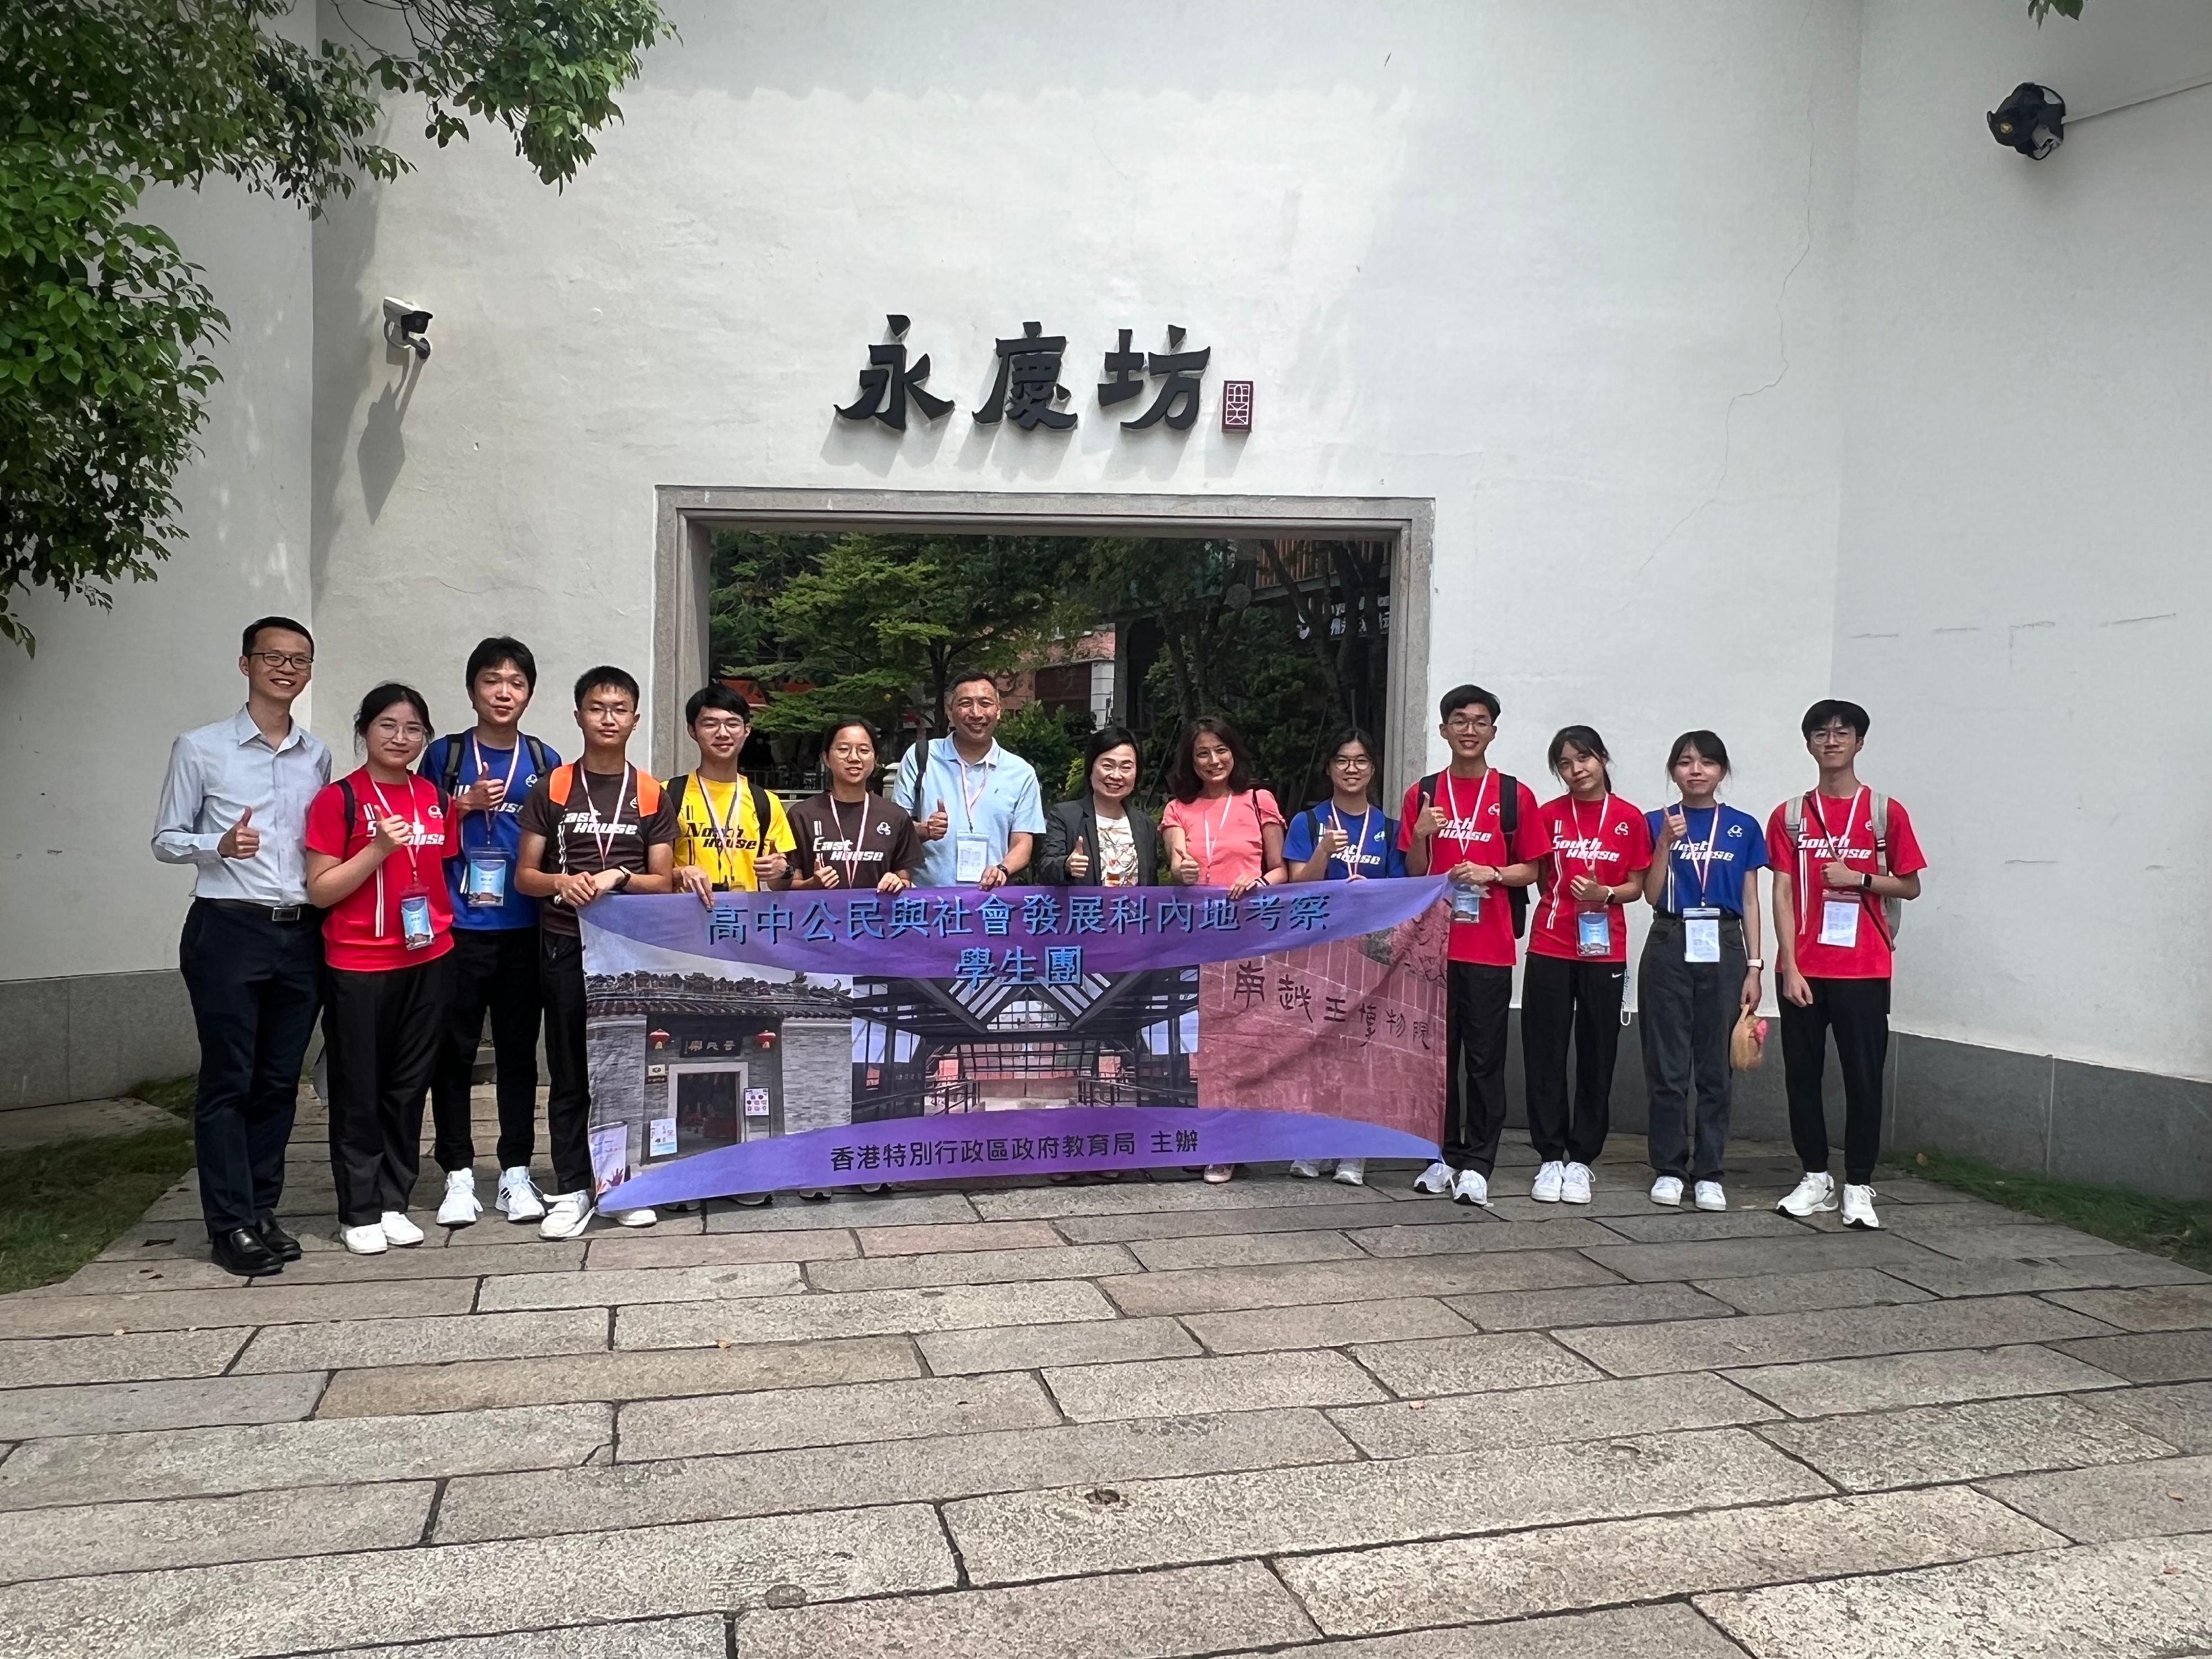 教育局局長蔡若蓮博士昨日（七月二十一日）在廣州與參加公民與社會發展科內地考察團的香港學生會面。圖示蔡若蓮博士（右七）與考察團師生到訪永慶坊。